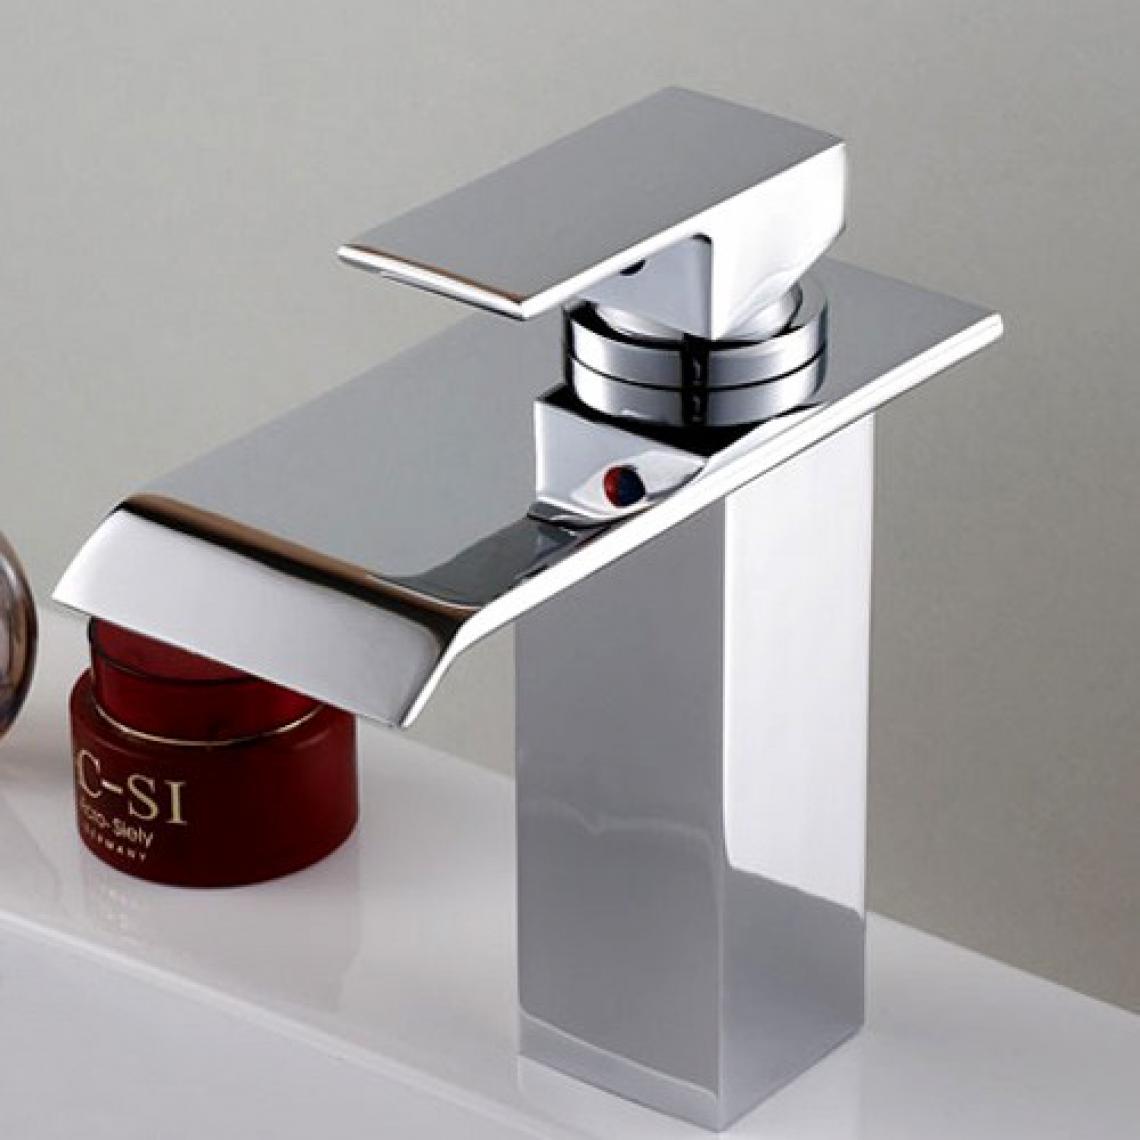 Kroos - Robinet lavabo mitigeur contemporain avec bec en cascade en chromé - Robinet de lavabo